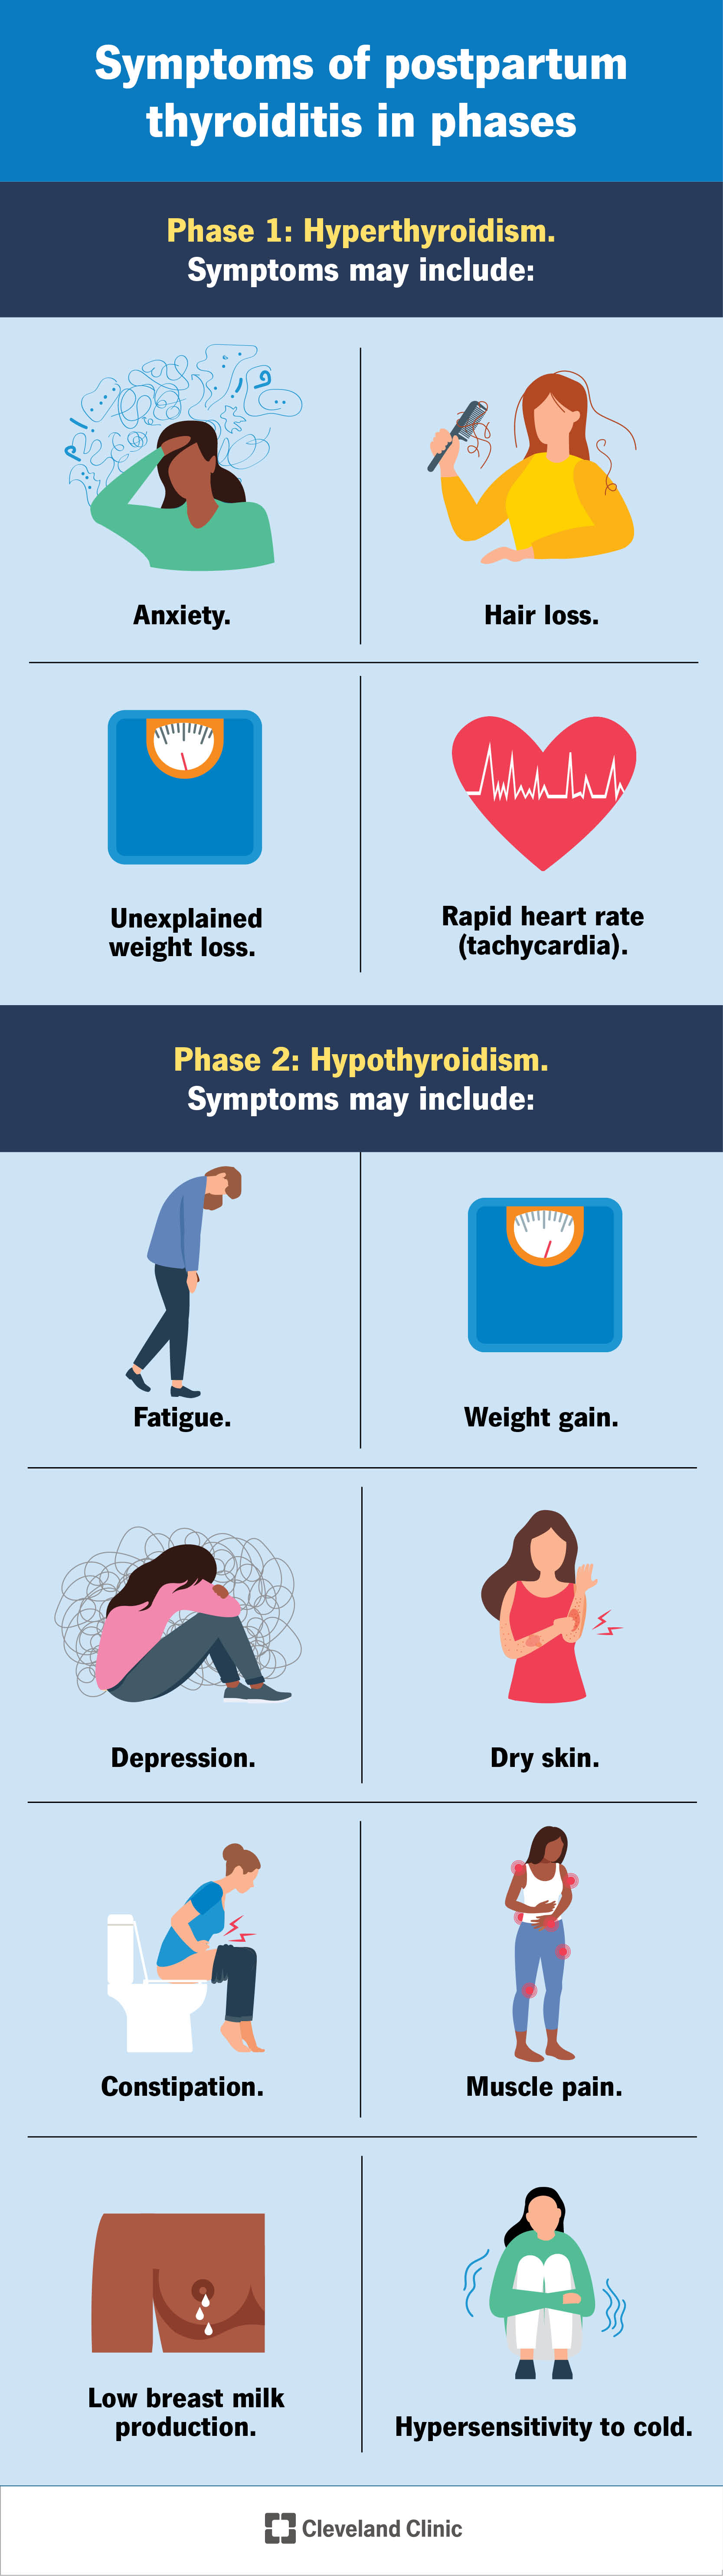 I sintomi della fase uno (ipertiroidismo) includono ansia e perdita di capelli.  I sintomi della fase 2 (ipotiroidismo) comprendono aumento di peso e pelle secca.